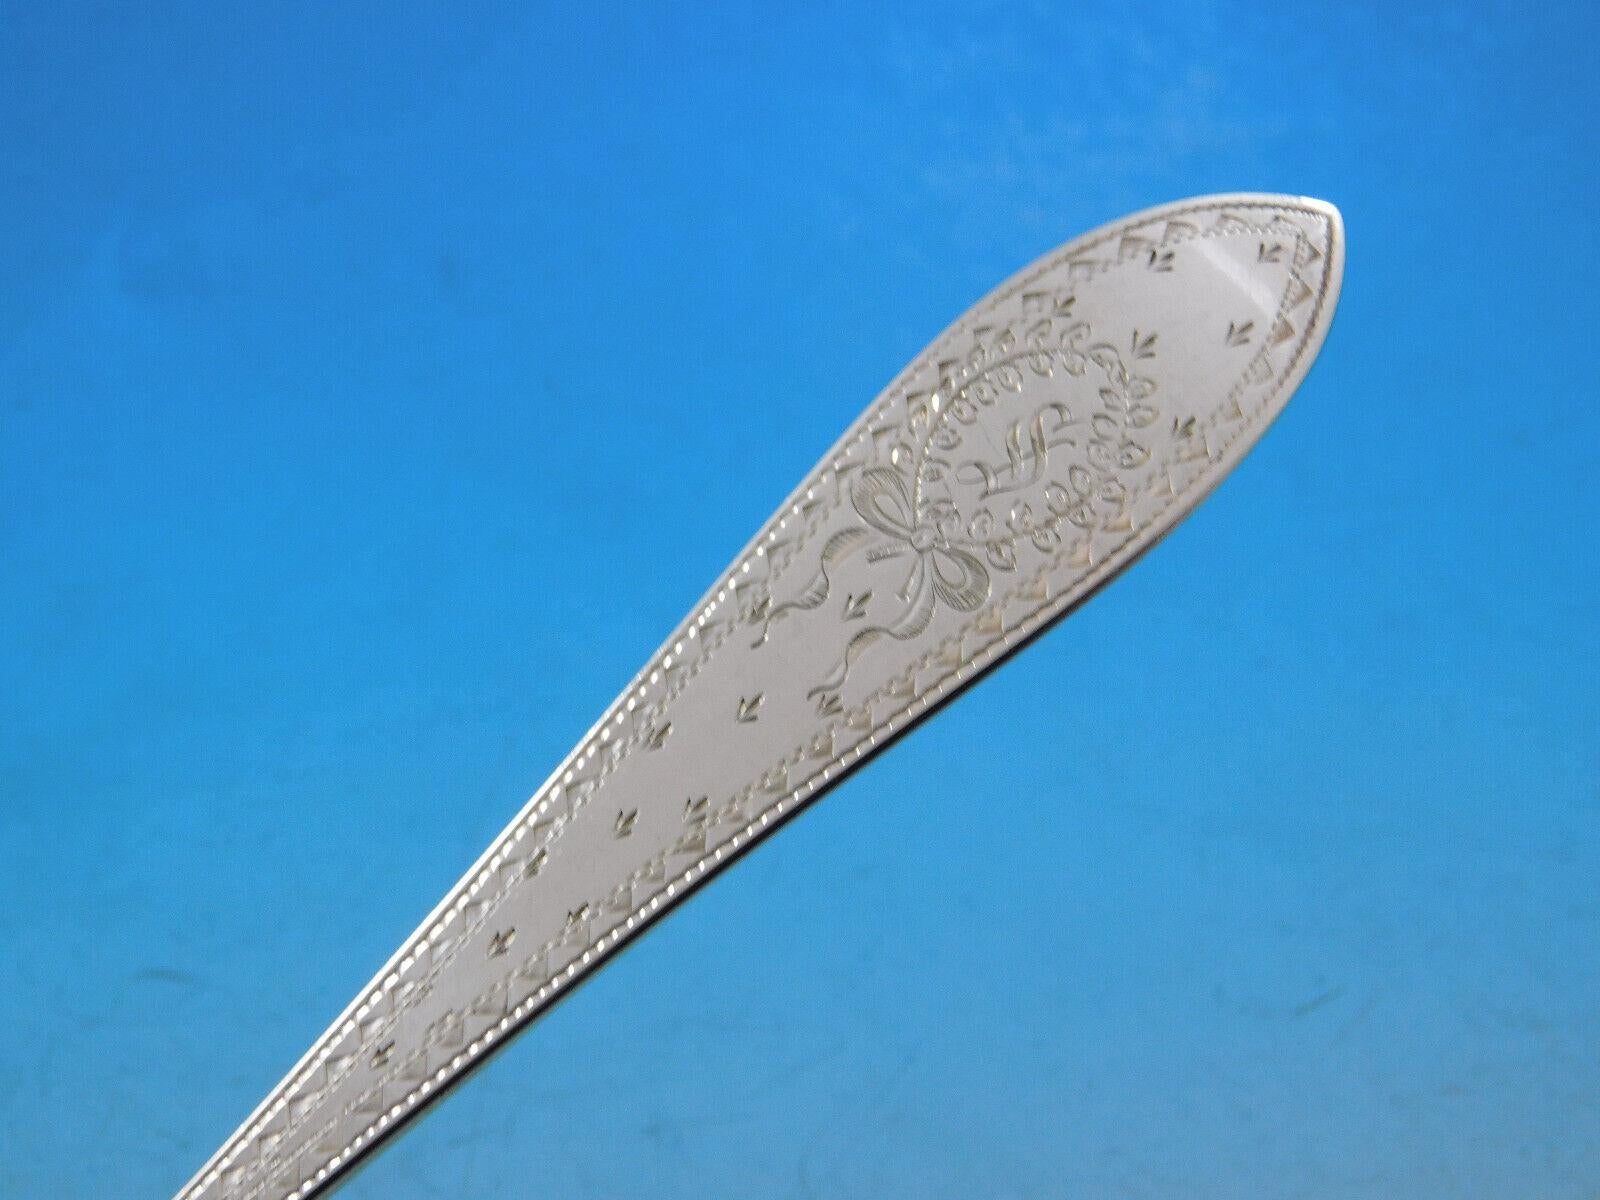 Colonial A Engraved by Whiting c. 1907 Sterling Silber Hand graviert Besteck mit einem Kranz mit Schleife, 39 Stück. Dieses Set enthält:

12 Messer, mit stumpfen, beschichteten Klingen, 9 1/8